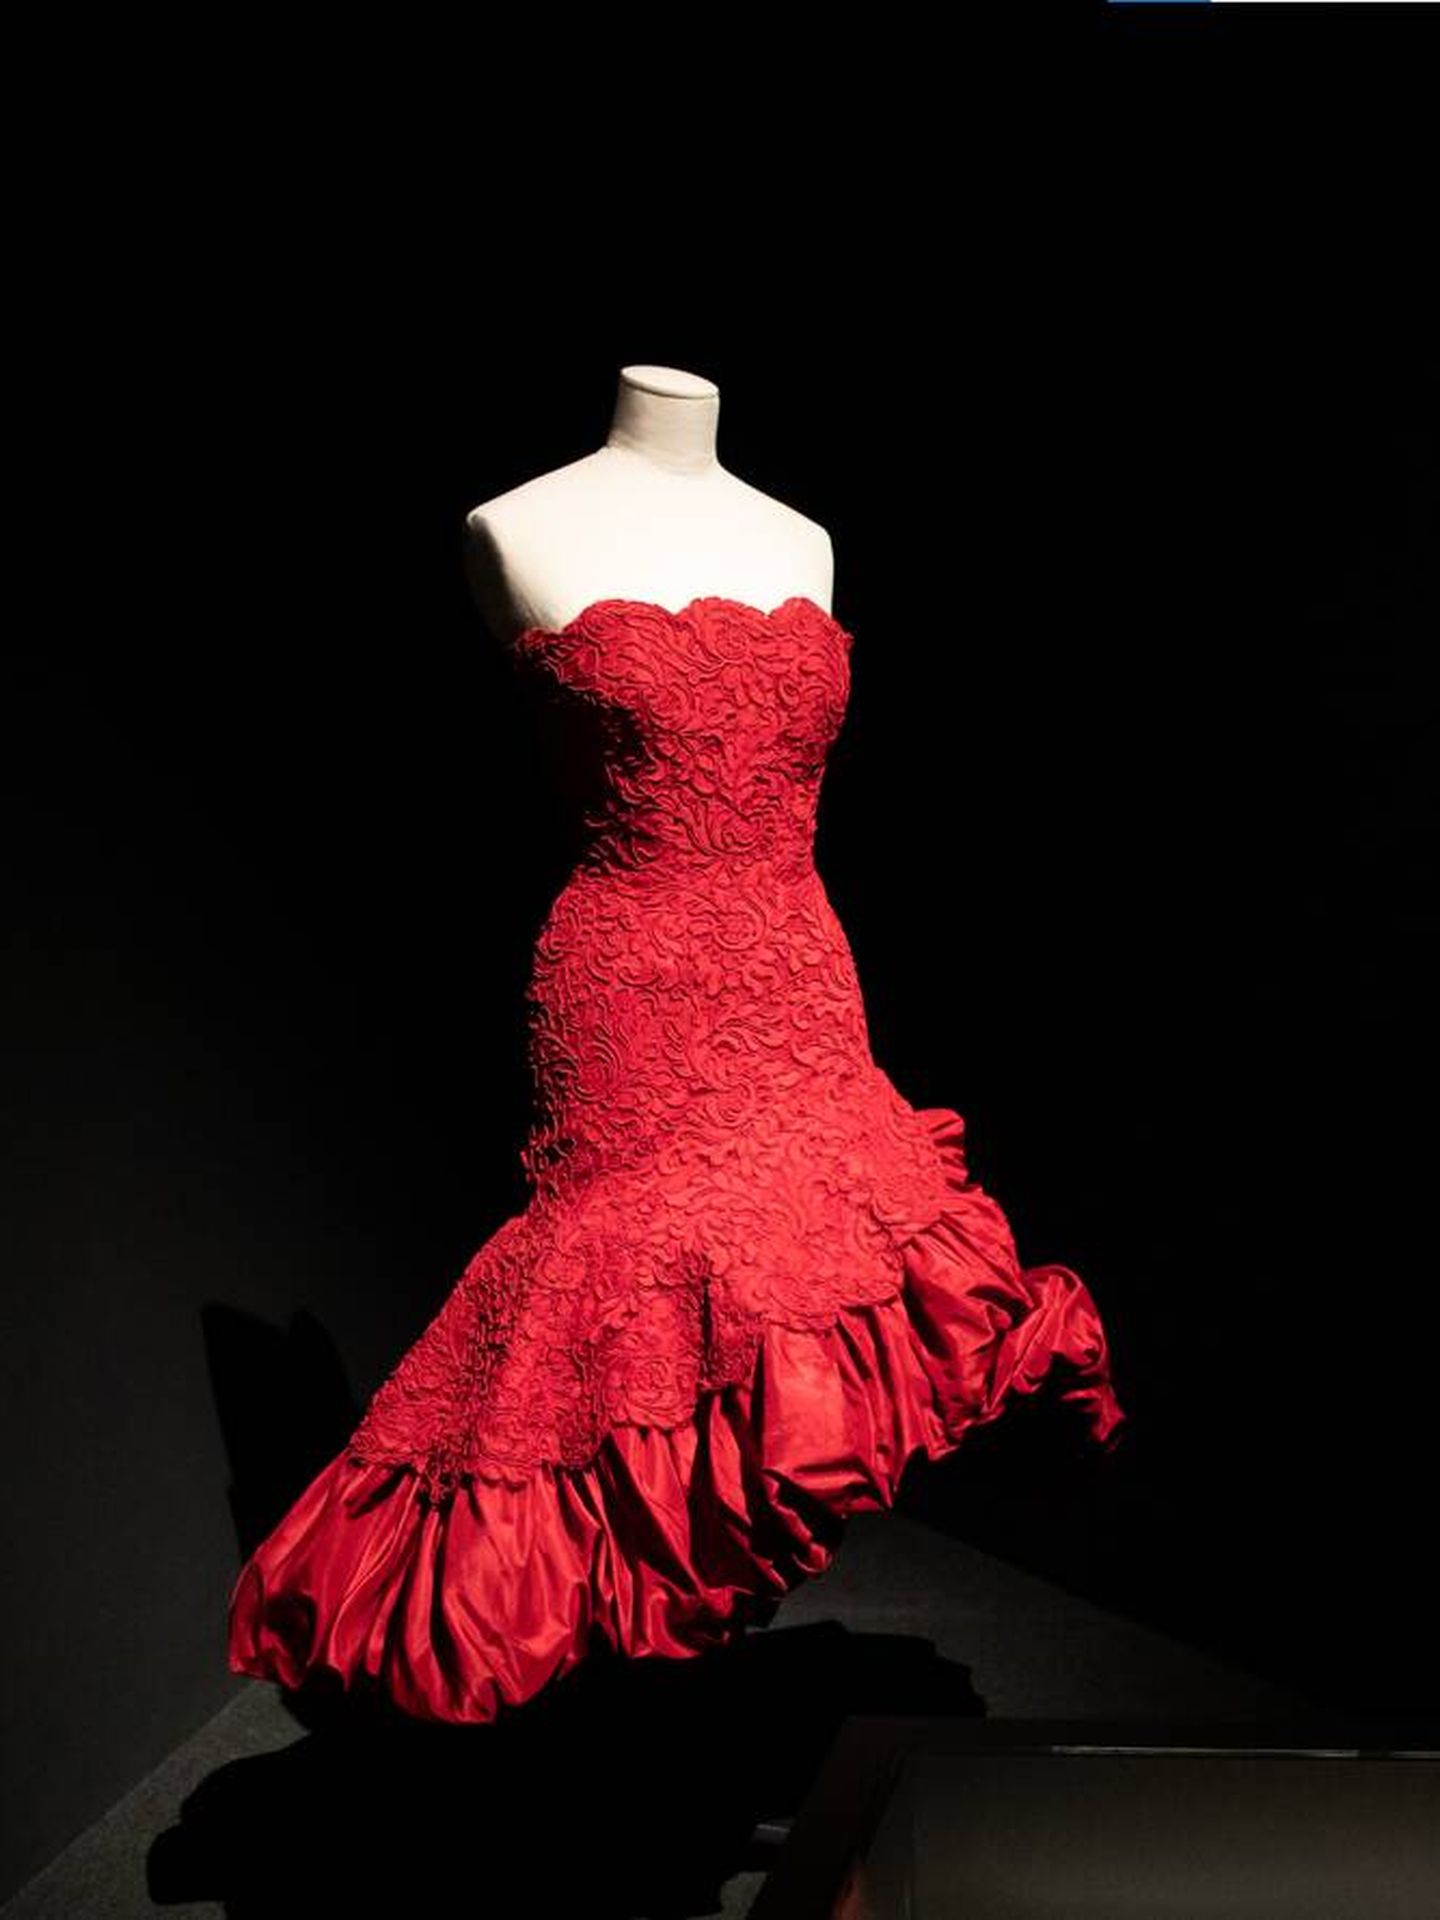 El vestido de noche corto en tafetán rojo es de Cristóbal Balenciaga, 1951. (Cortesía)